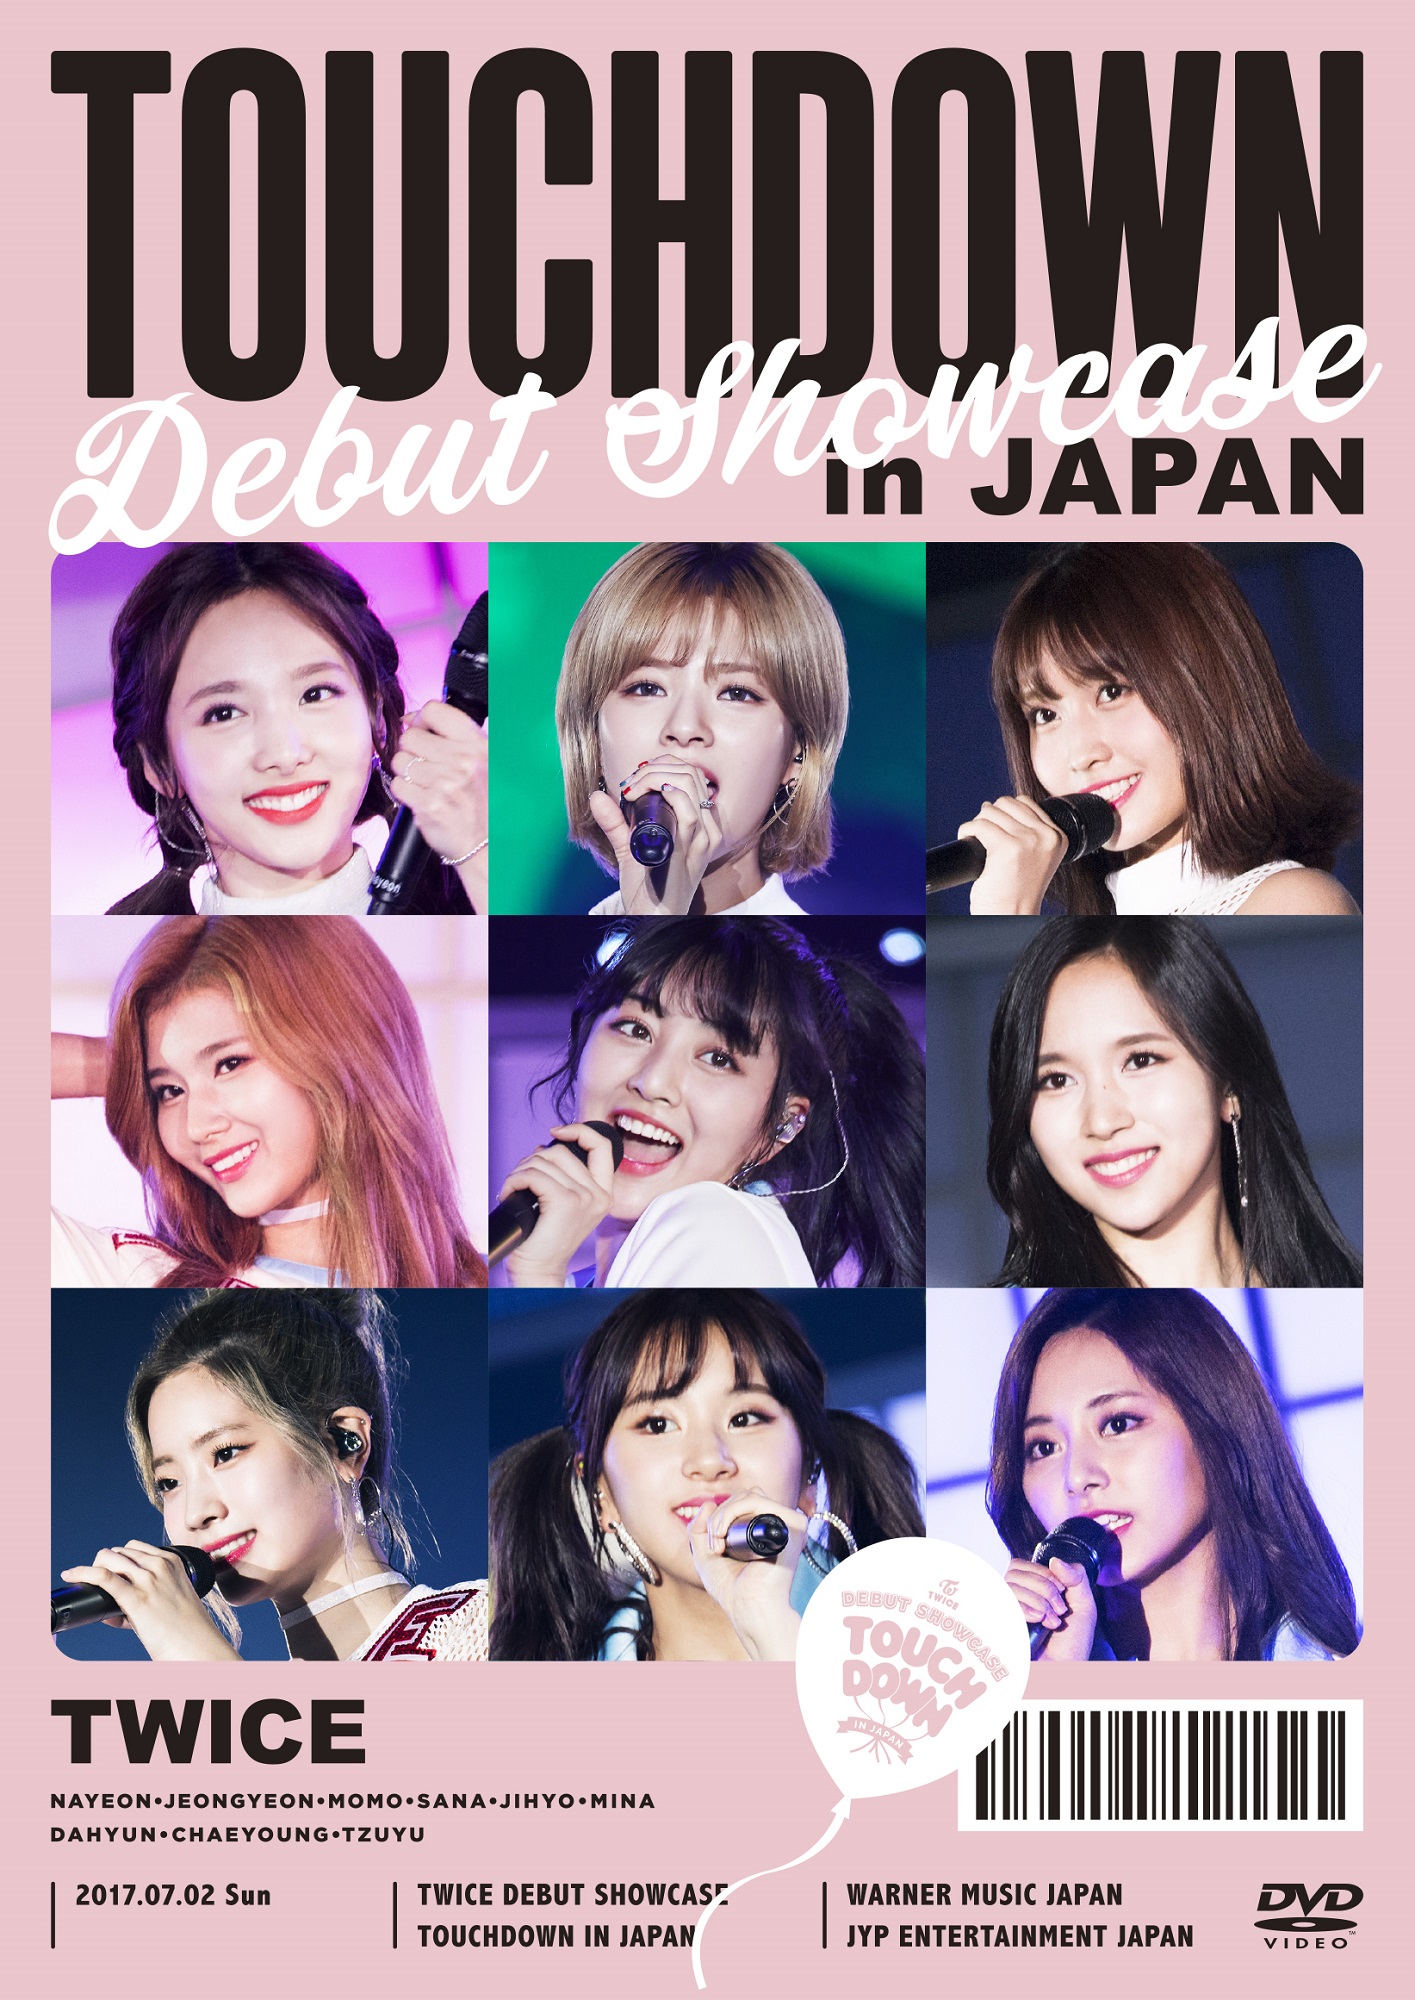 TWICE Debut Showcase TOUCHDOWN in JAPAN | Twice Wiki | Fandom